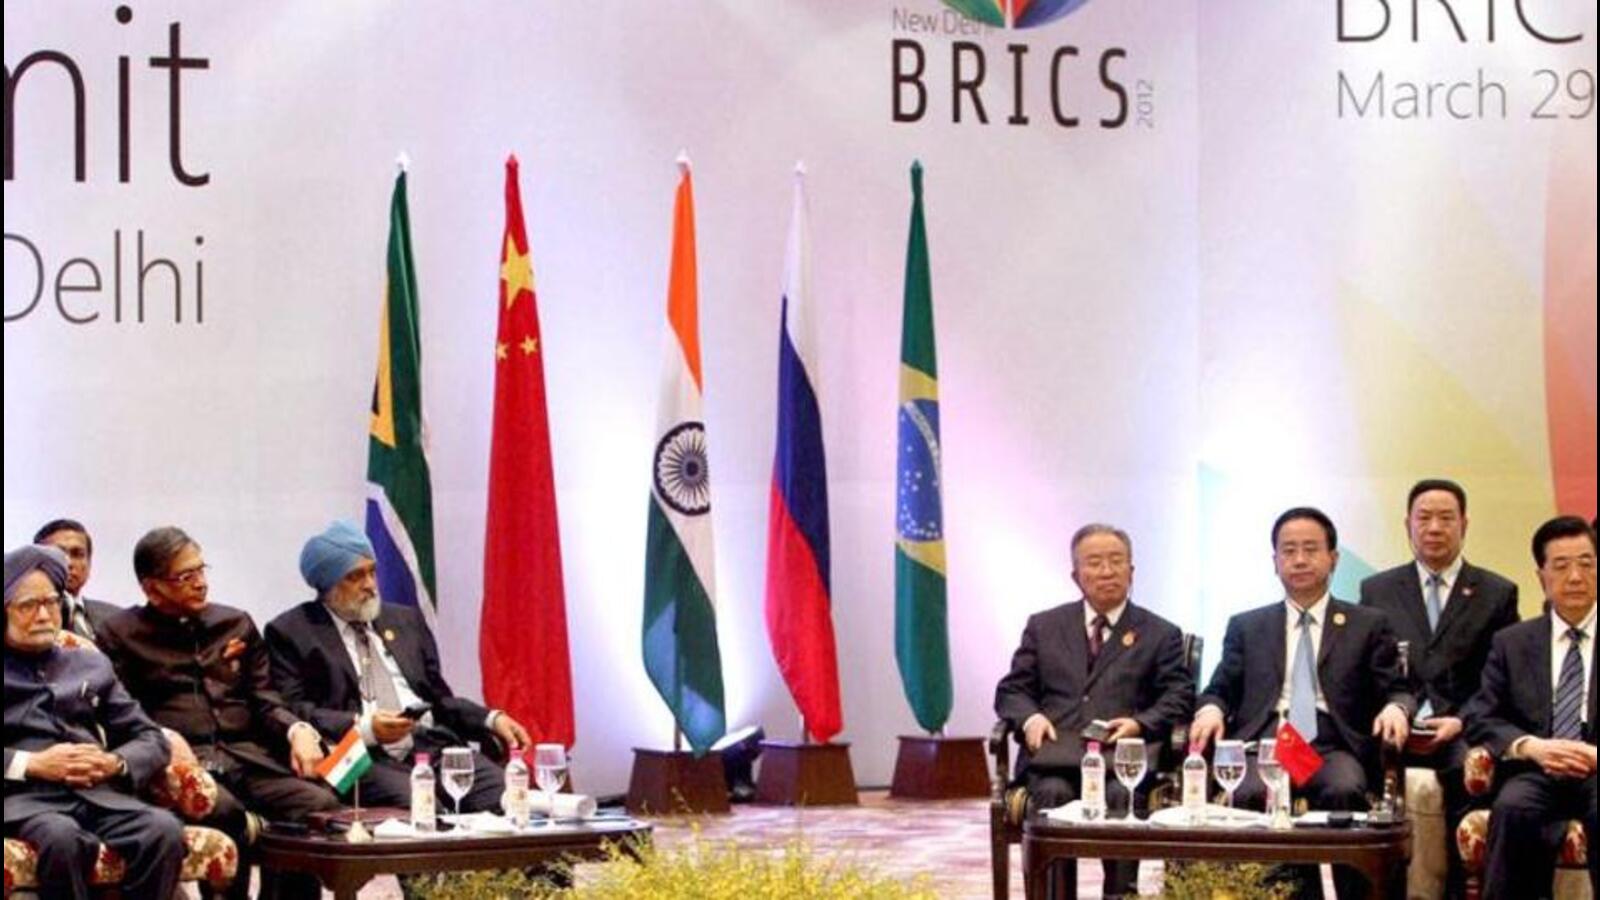 India berhati-hati dengan ekspansi Brics |  Berita India Terbaru